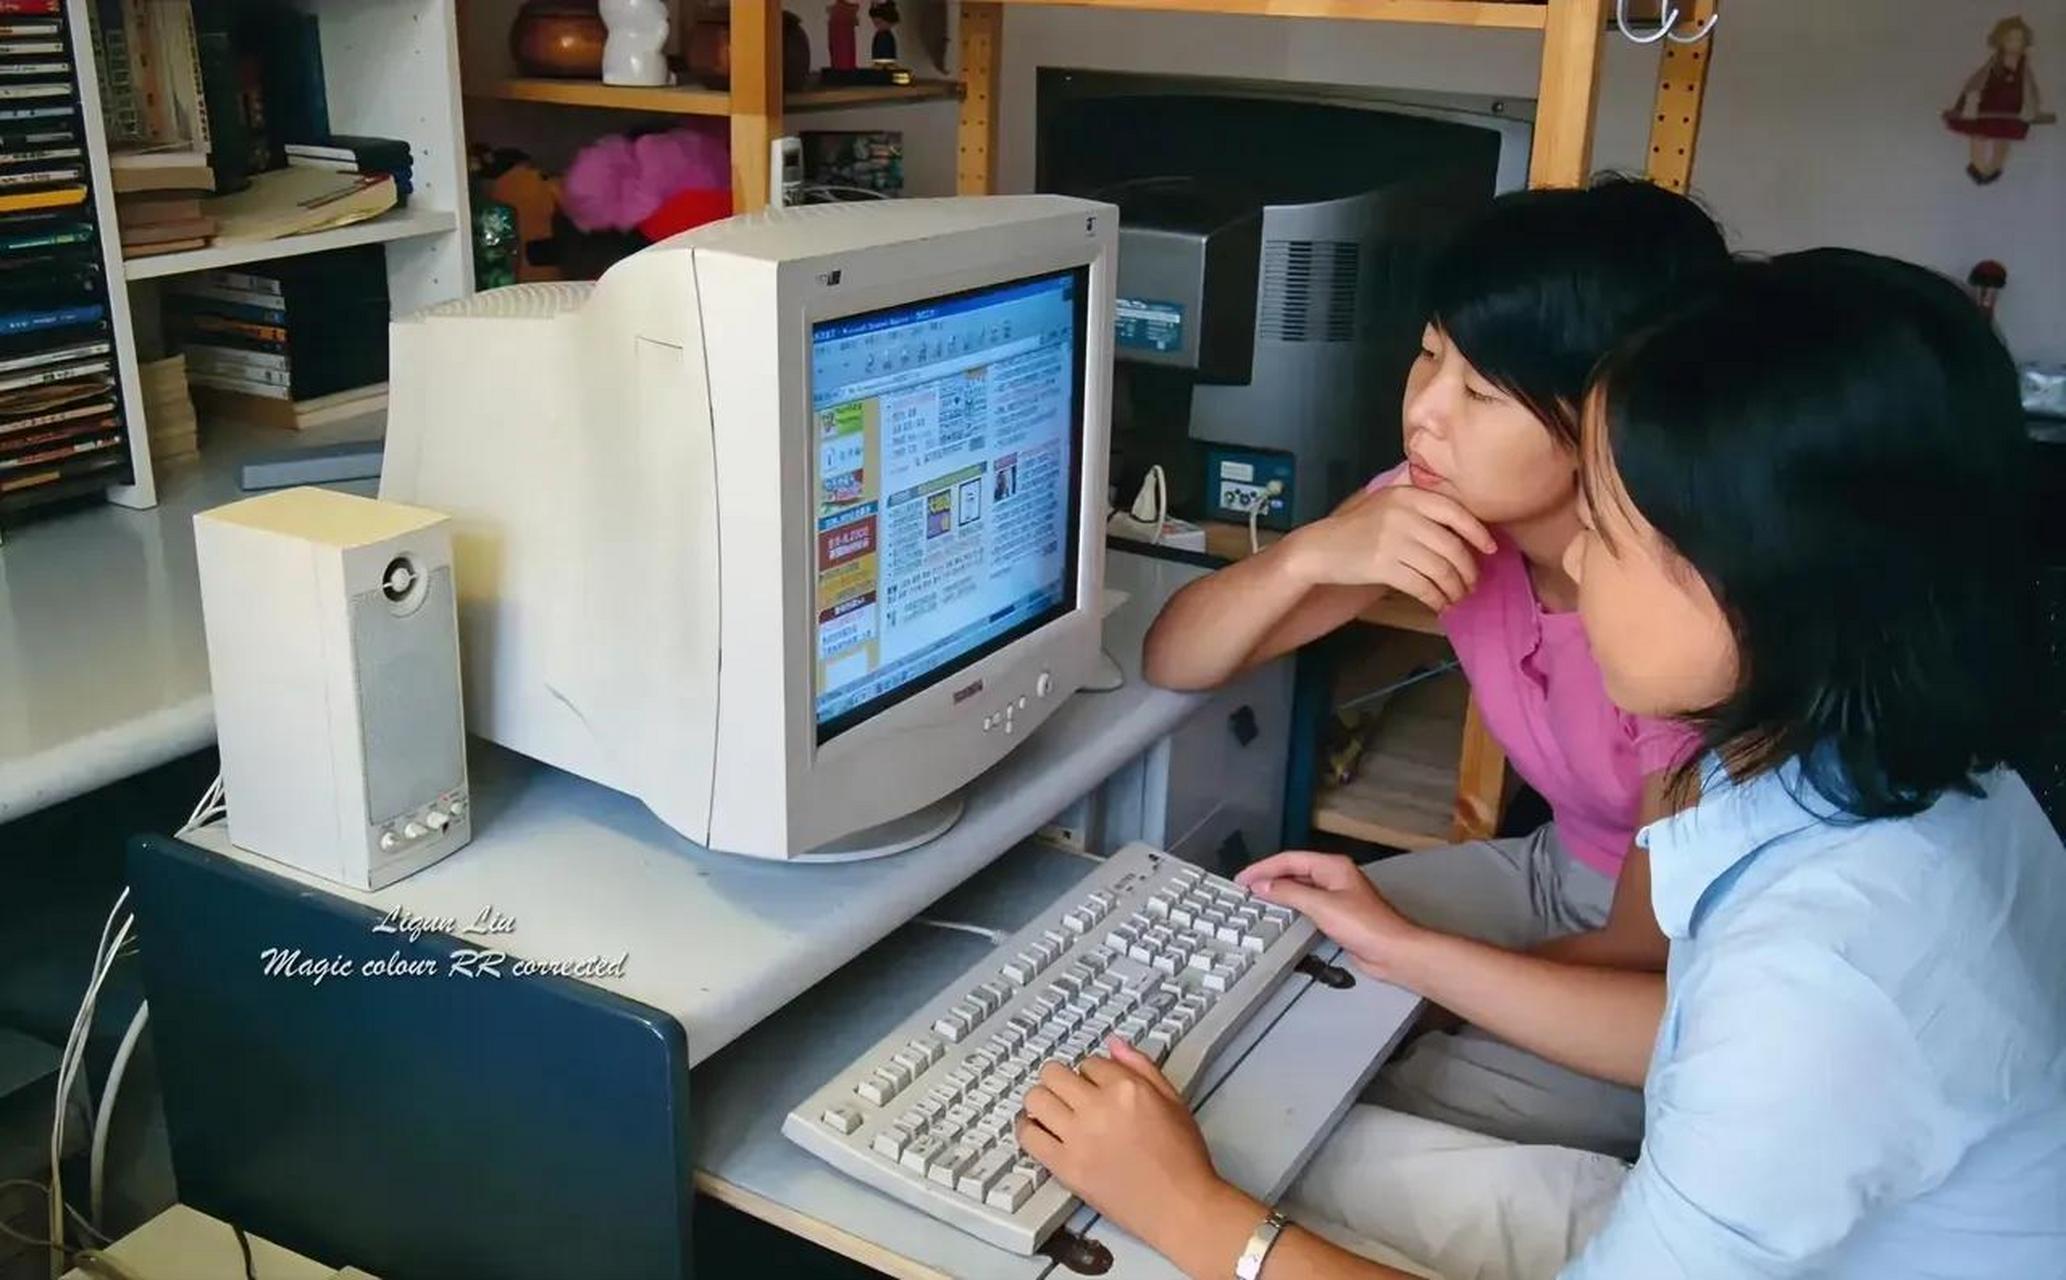 2002年的北京,一对年轻女子坐在电脑前浏览网络